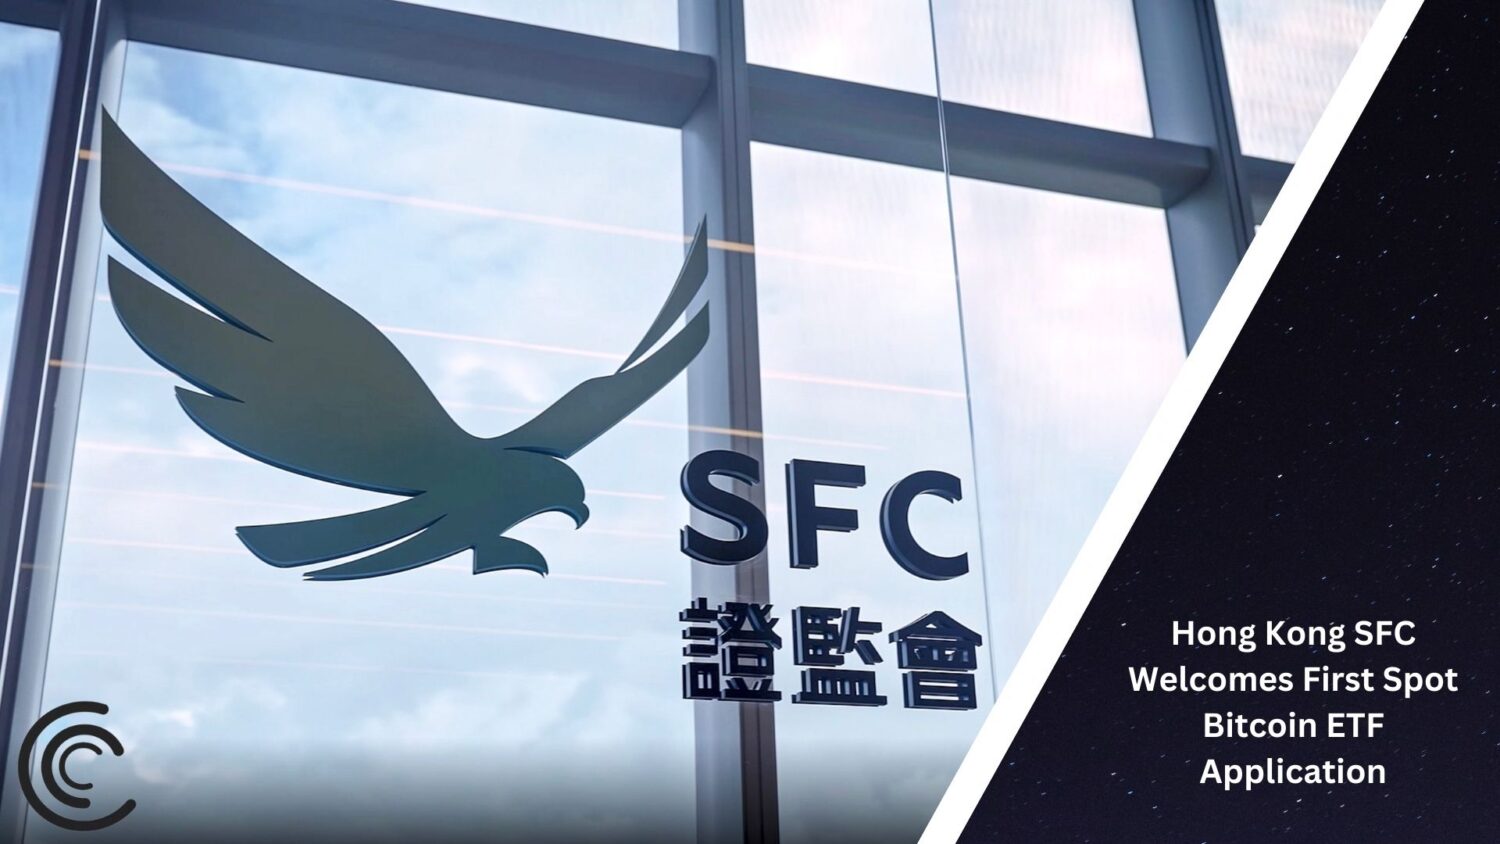 Hong Kong Sfc Welcomes First Spot Bitcoin Etf Application